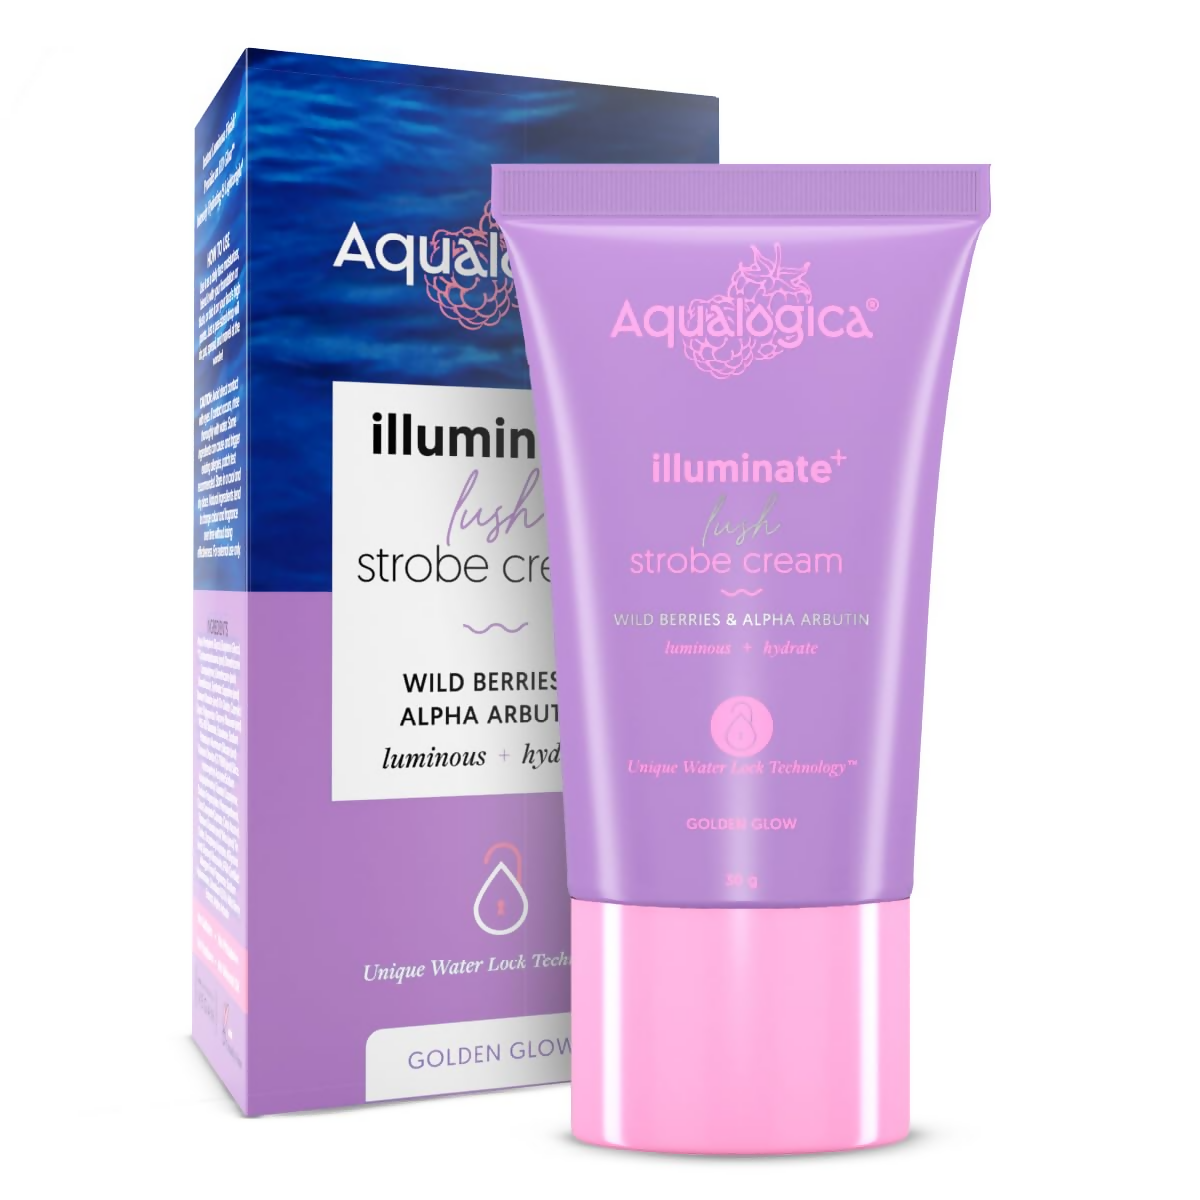 Aqualogica Illuminate+ Lush Strobe Cream - Distacart